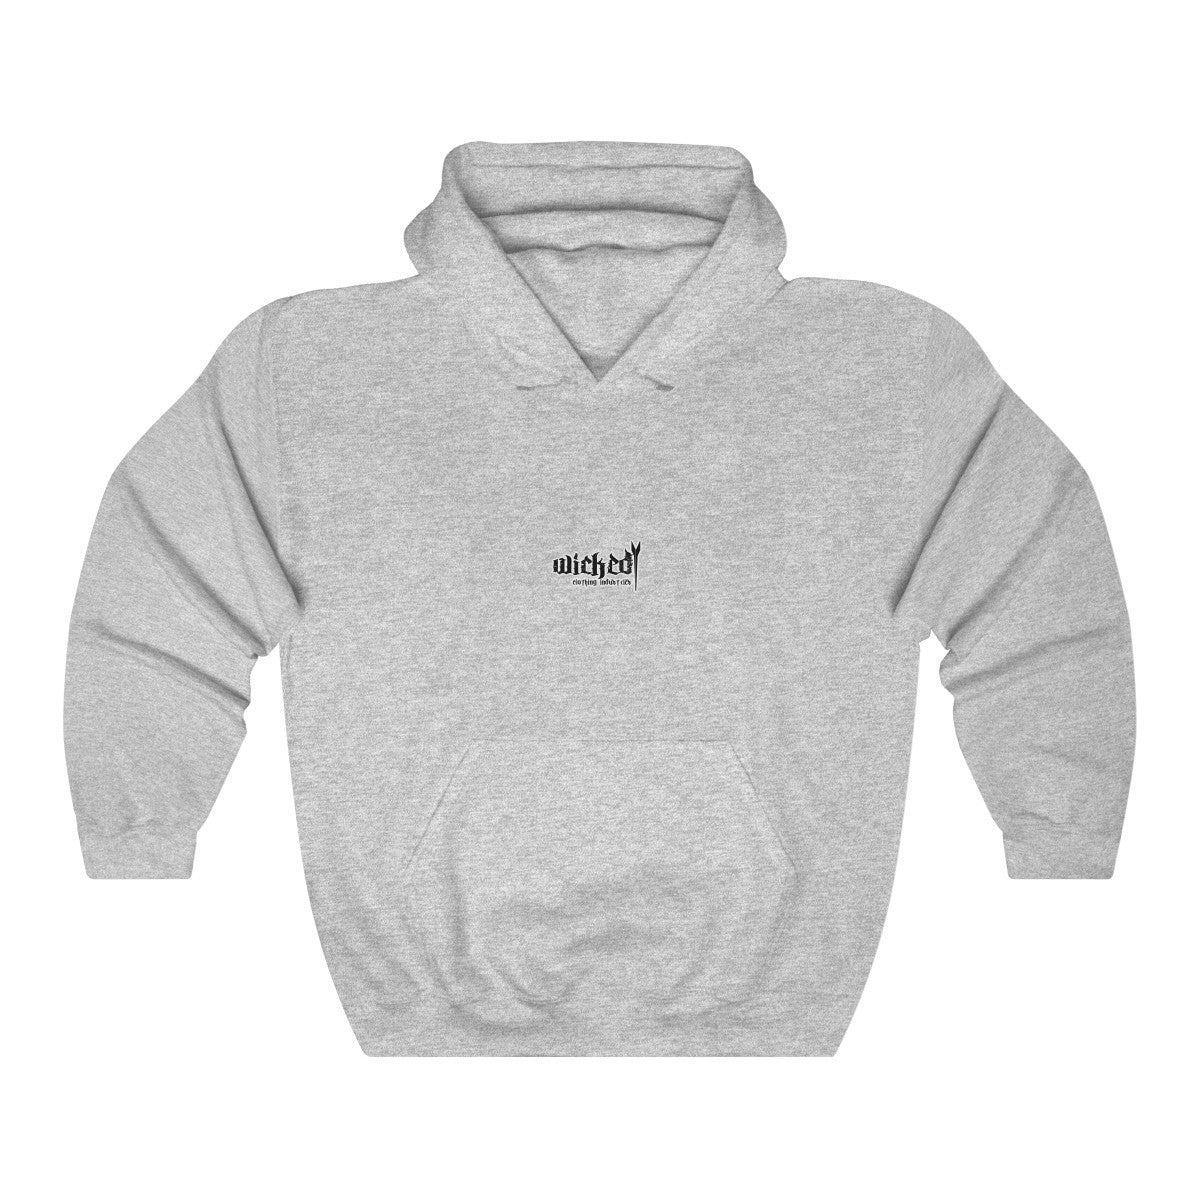 WCI 2 Hooded Sweatshirt